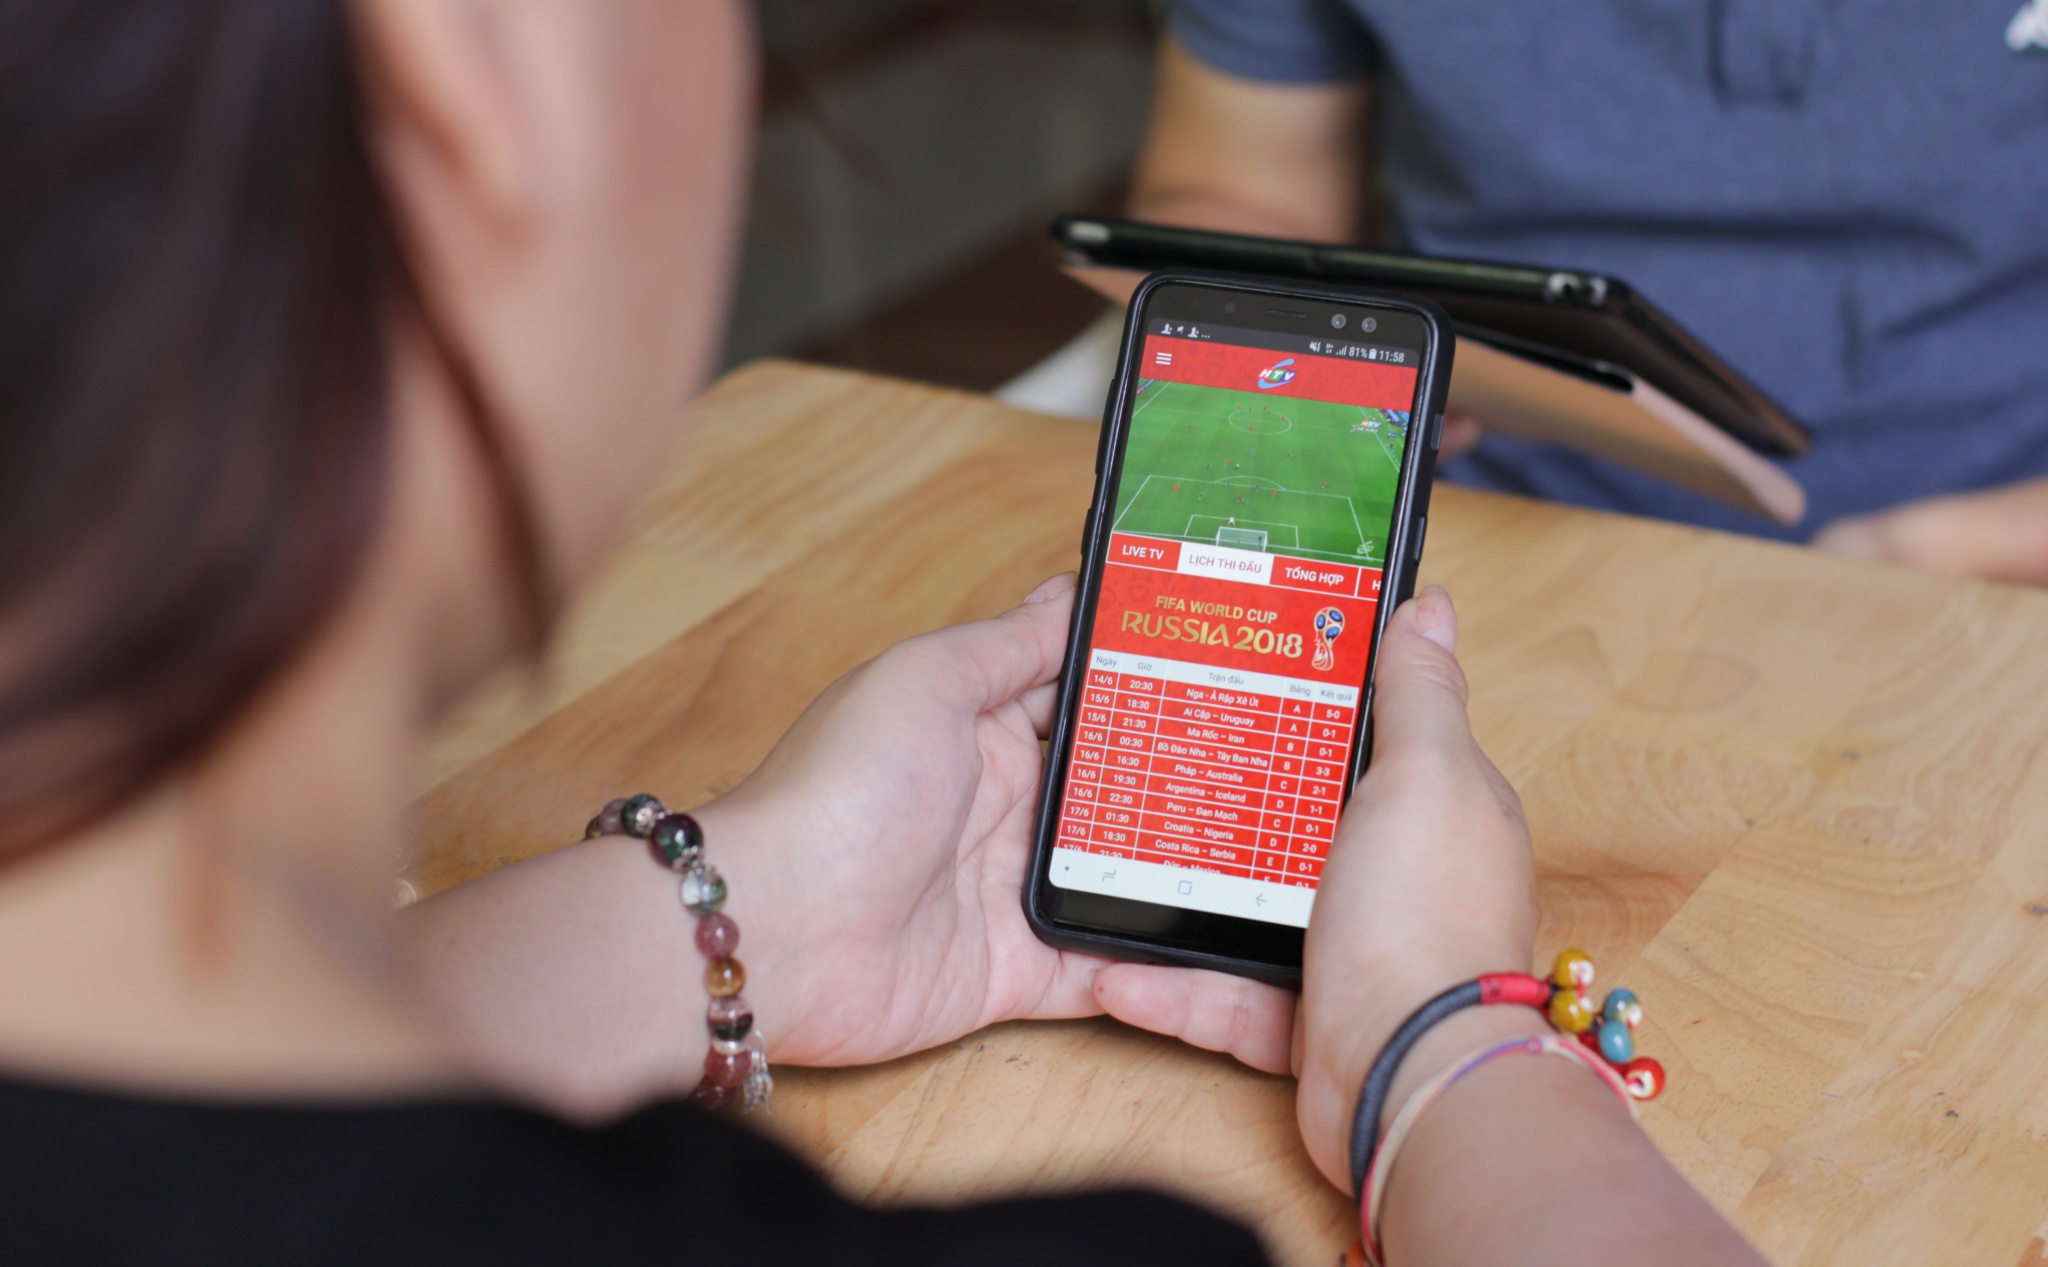 [QC] Tuyệt chiêu xem chung kết World Cup 2018 mượt mà trên smartphone